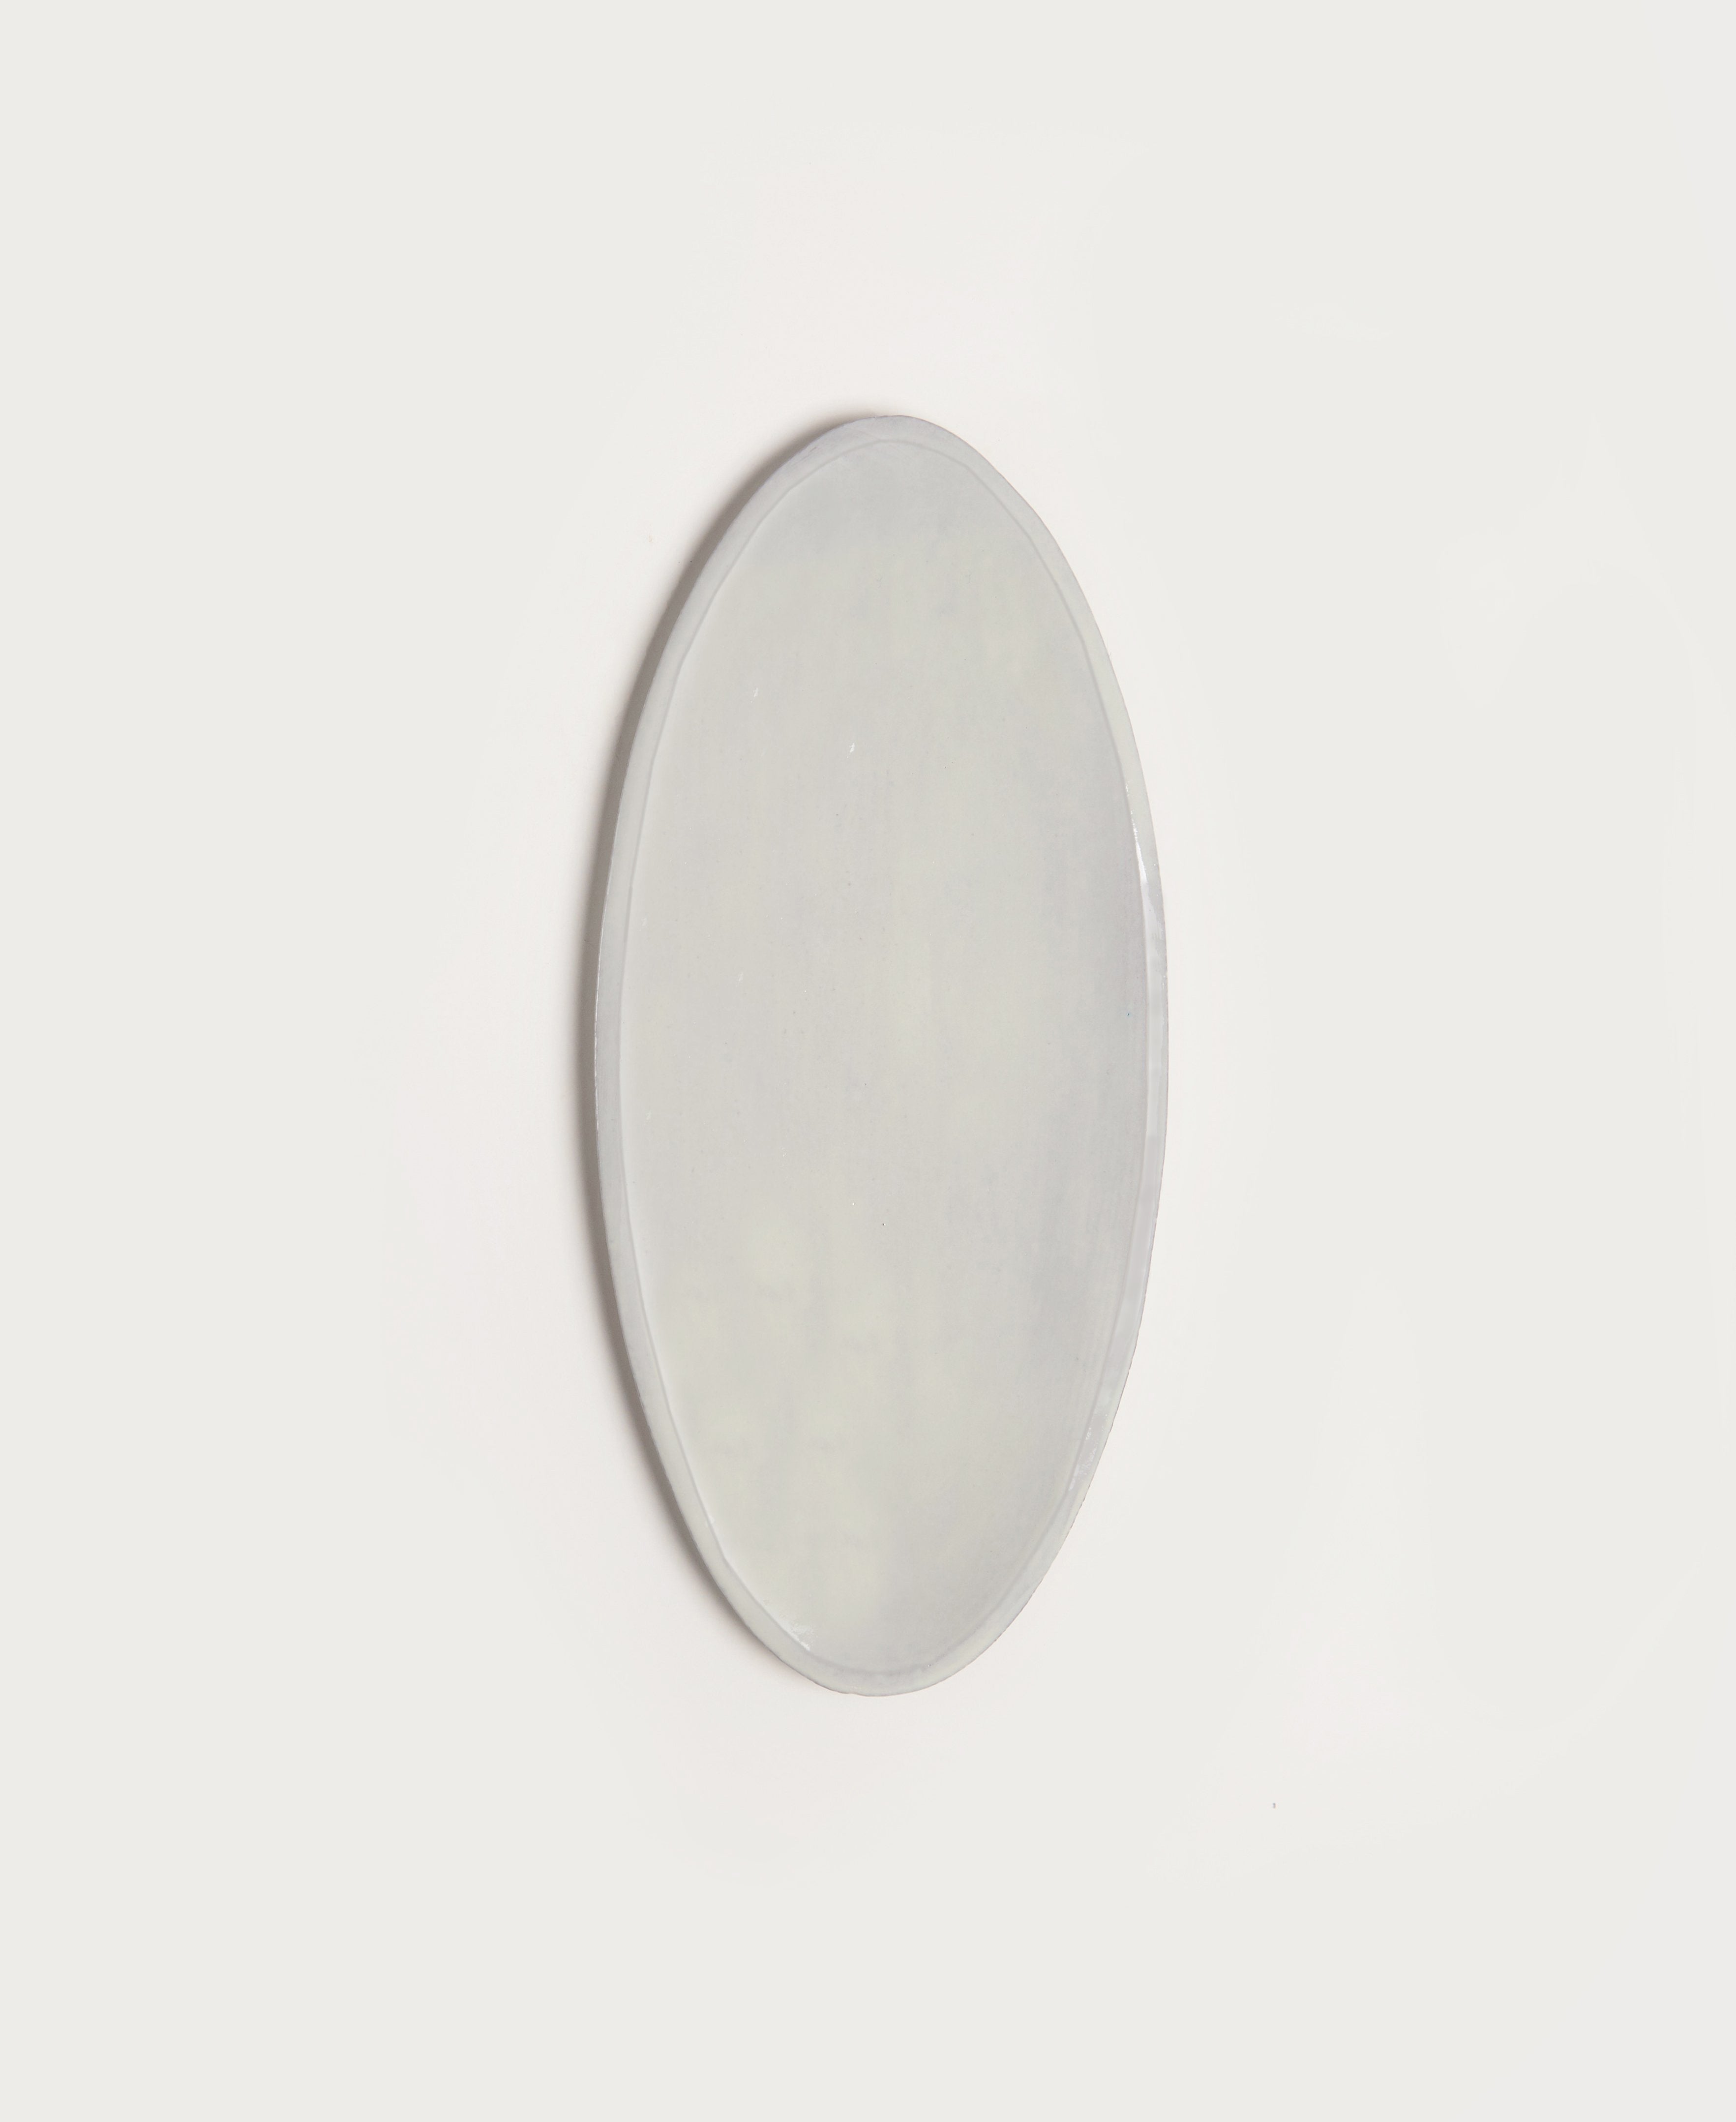   Medium Oval Platter  